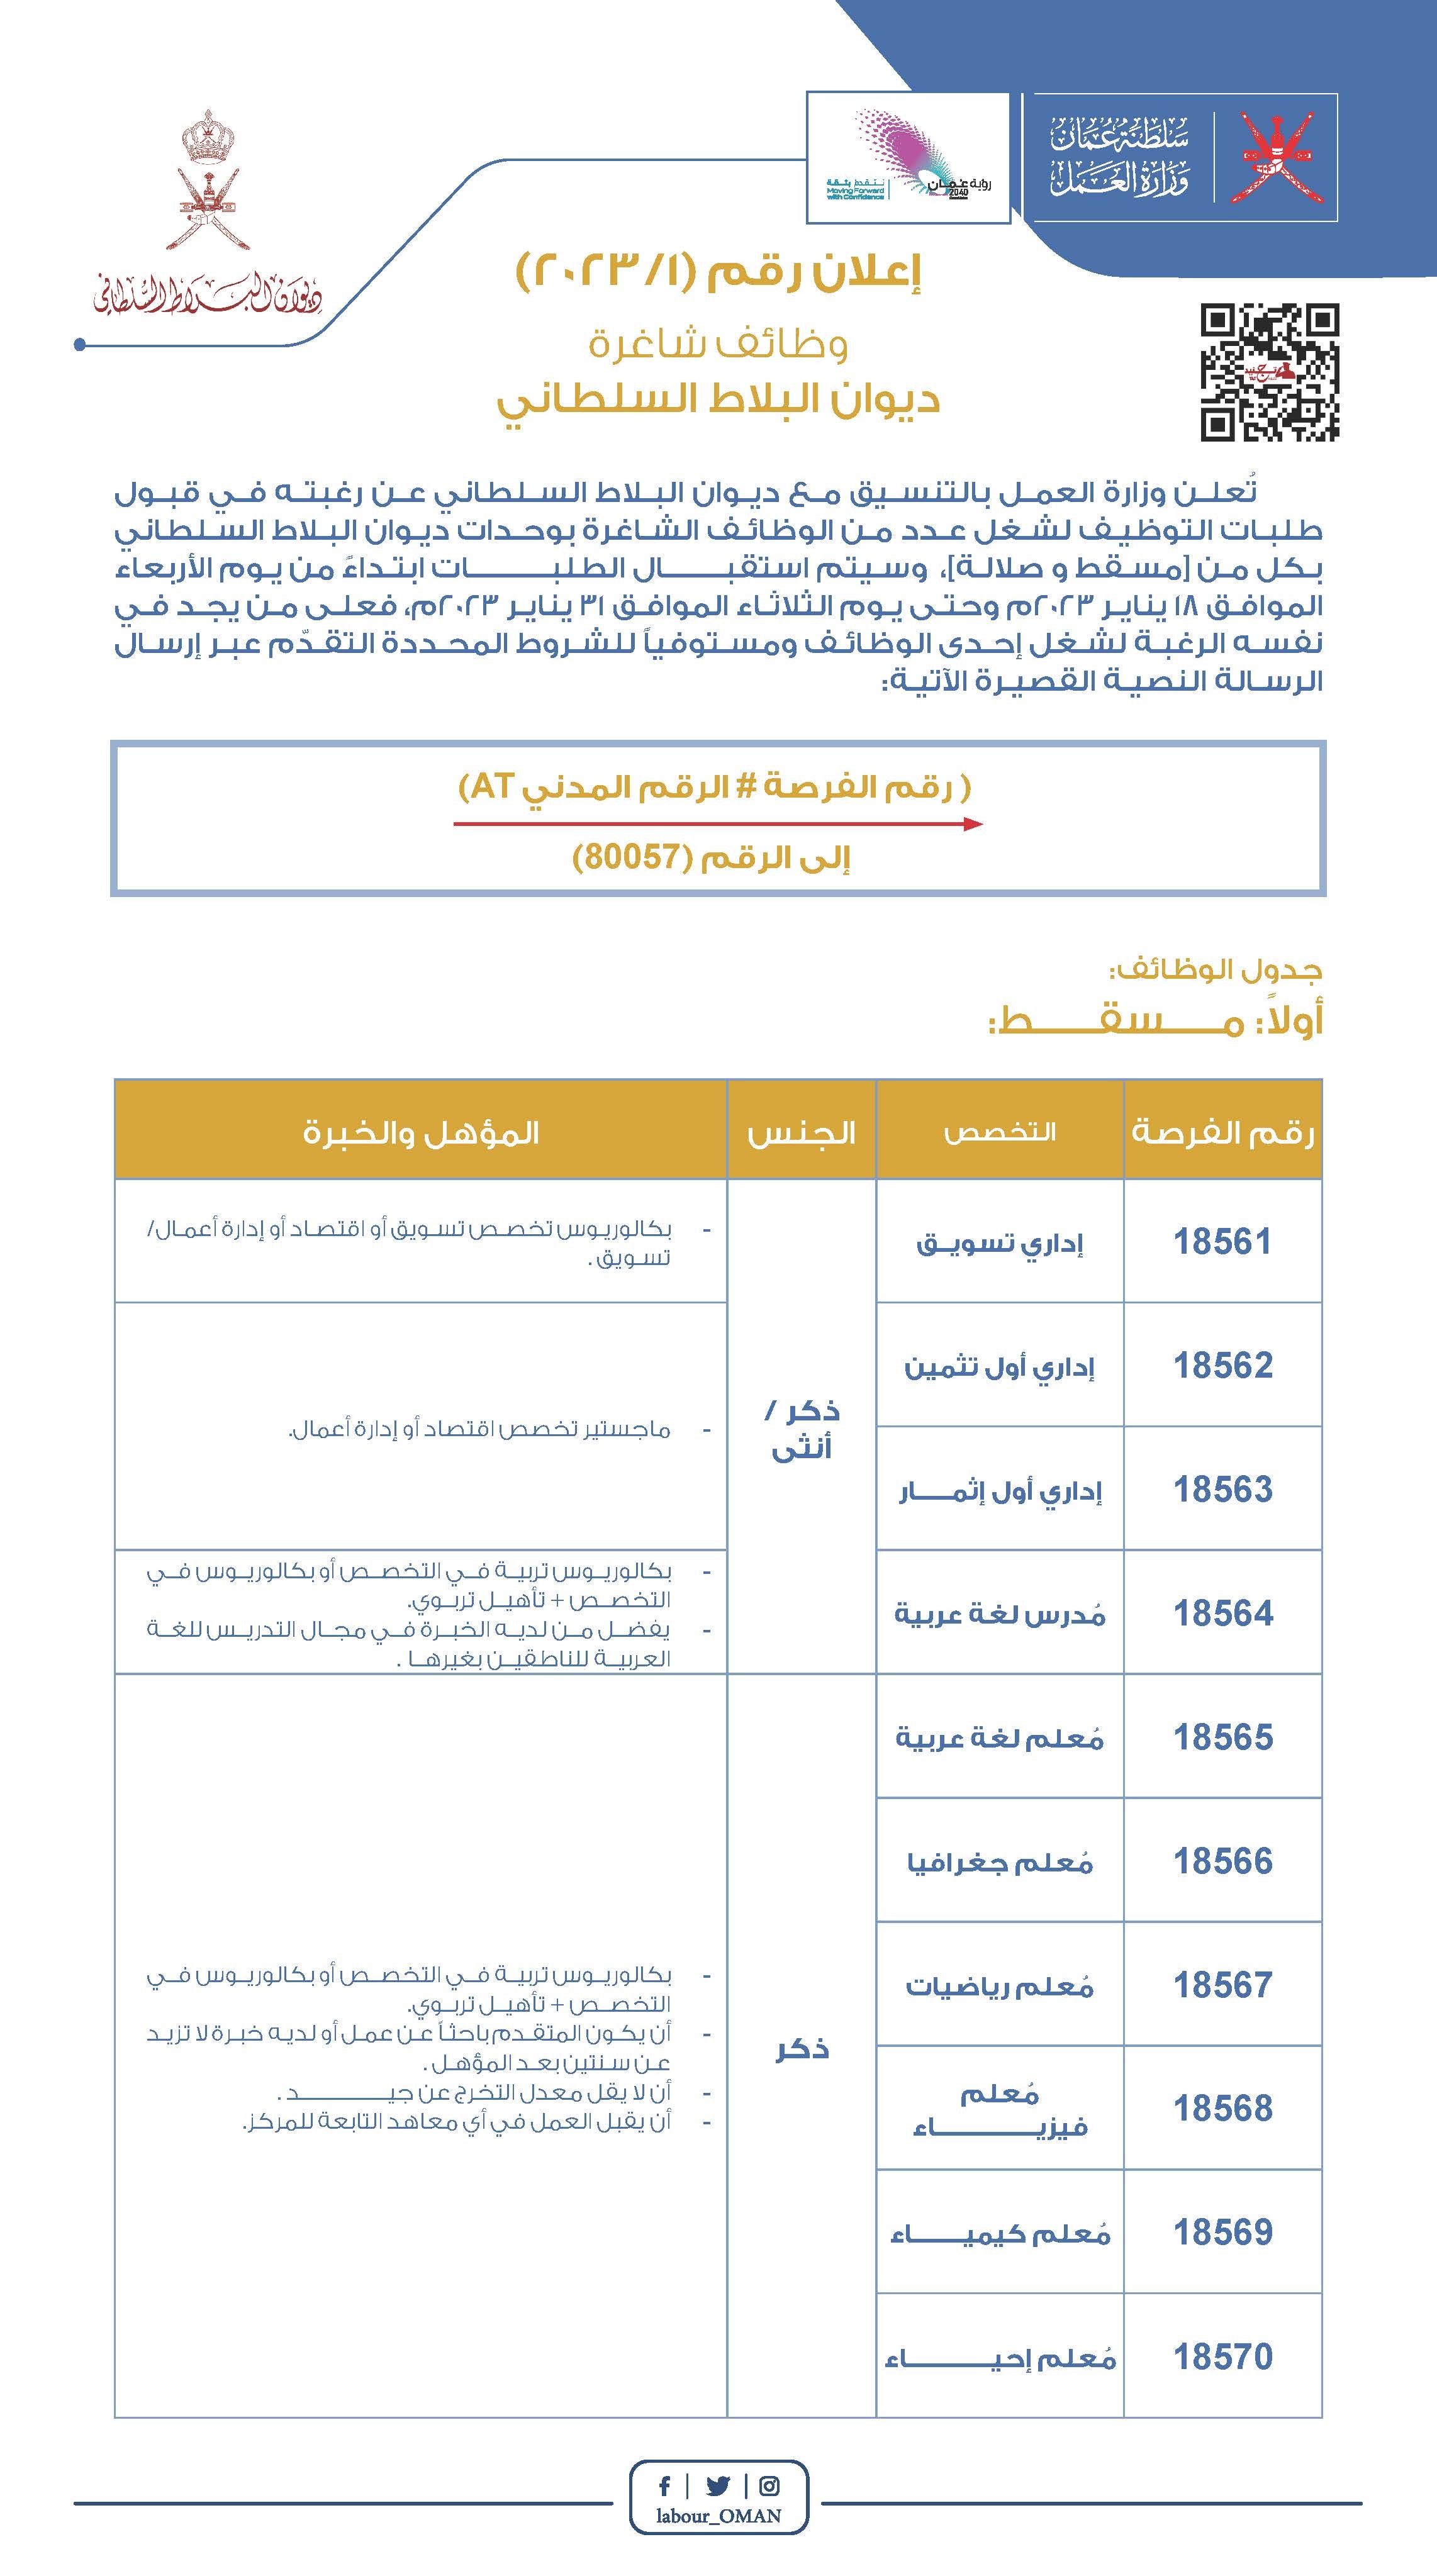 إعلان  ٢٠٢٣١ ديوان البلاط السلطاني-تفصيلي _Page_1.jpg